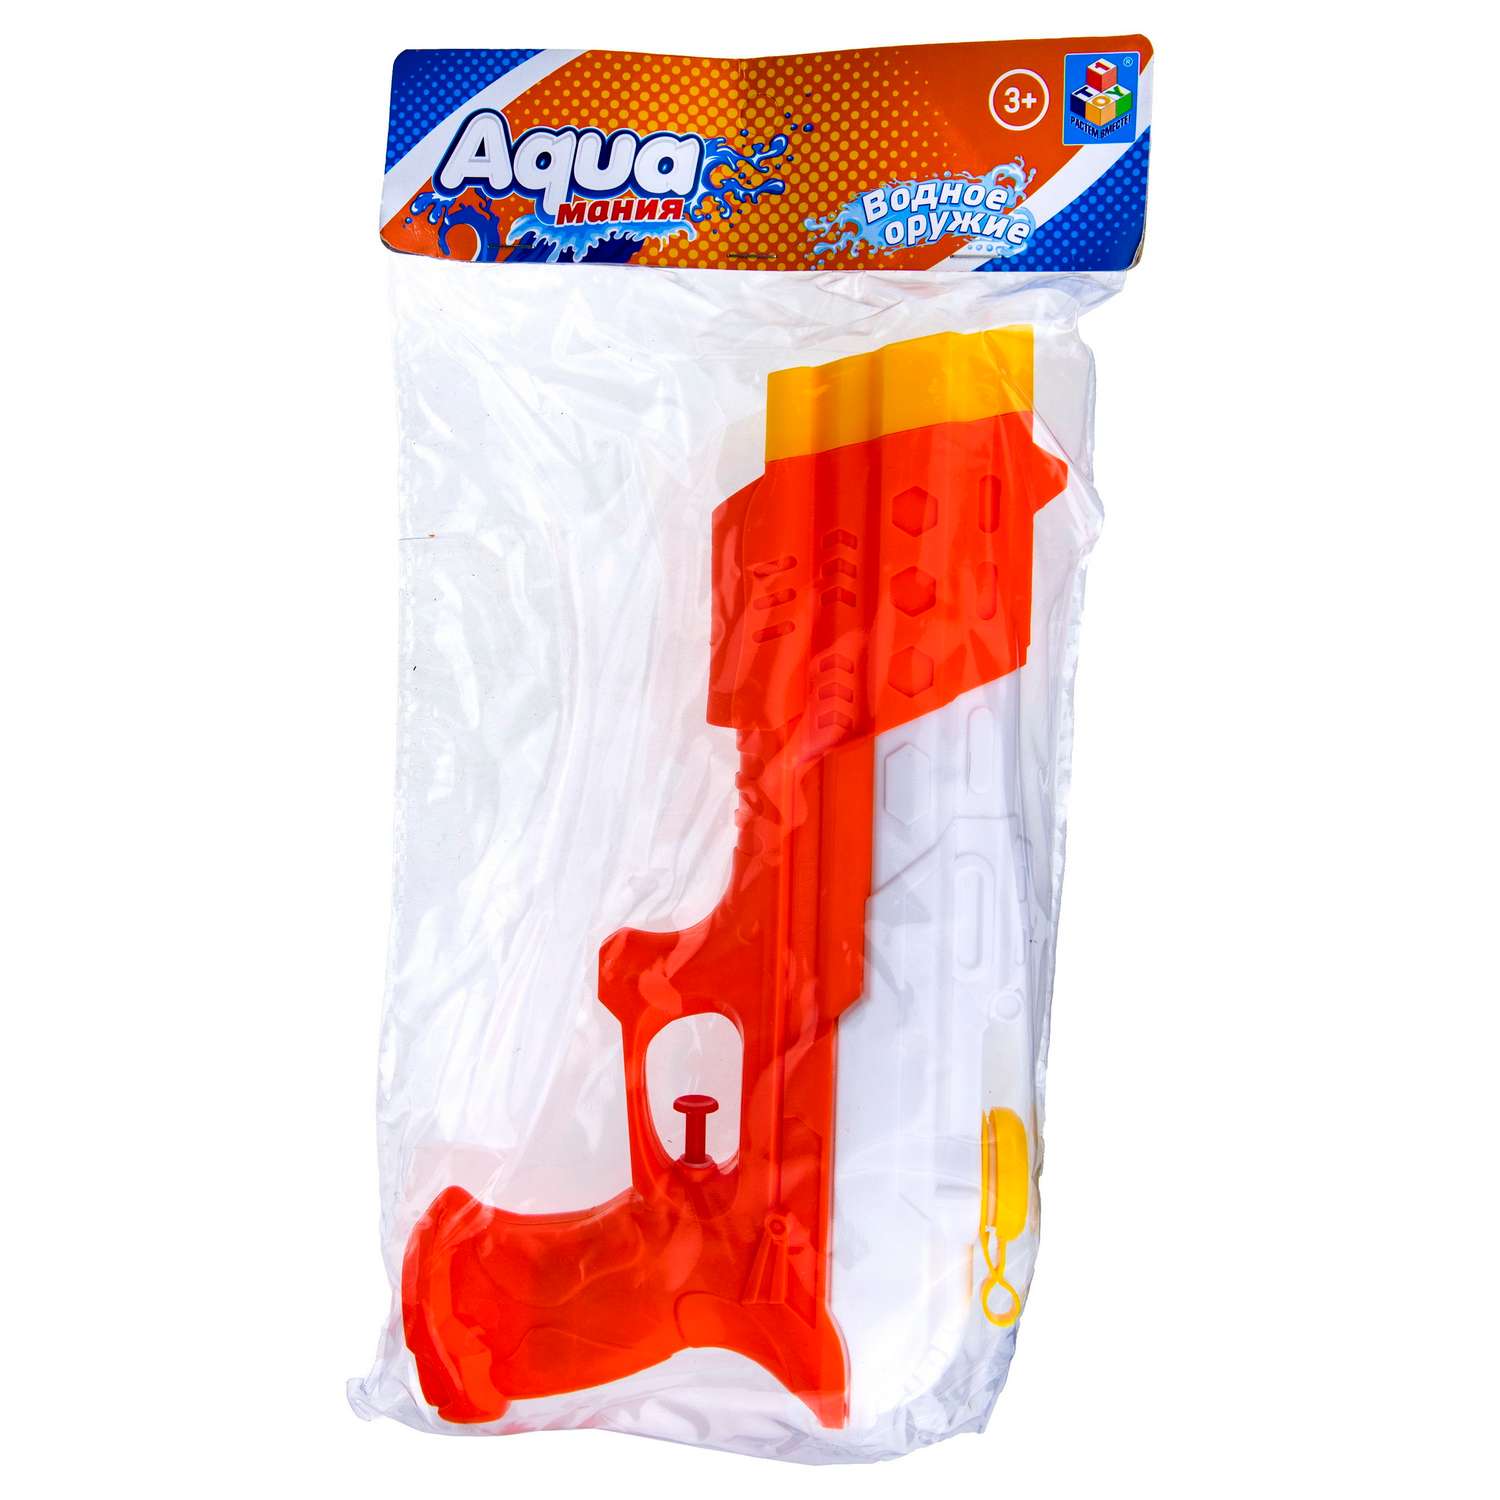 Водное оружие Aqua мания Пистолет оранжево-белый - фото 2